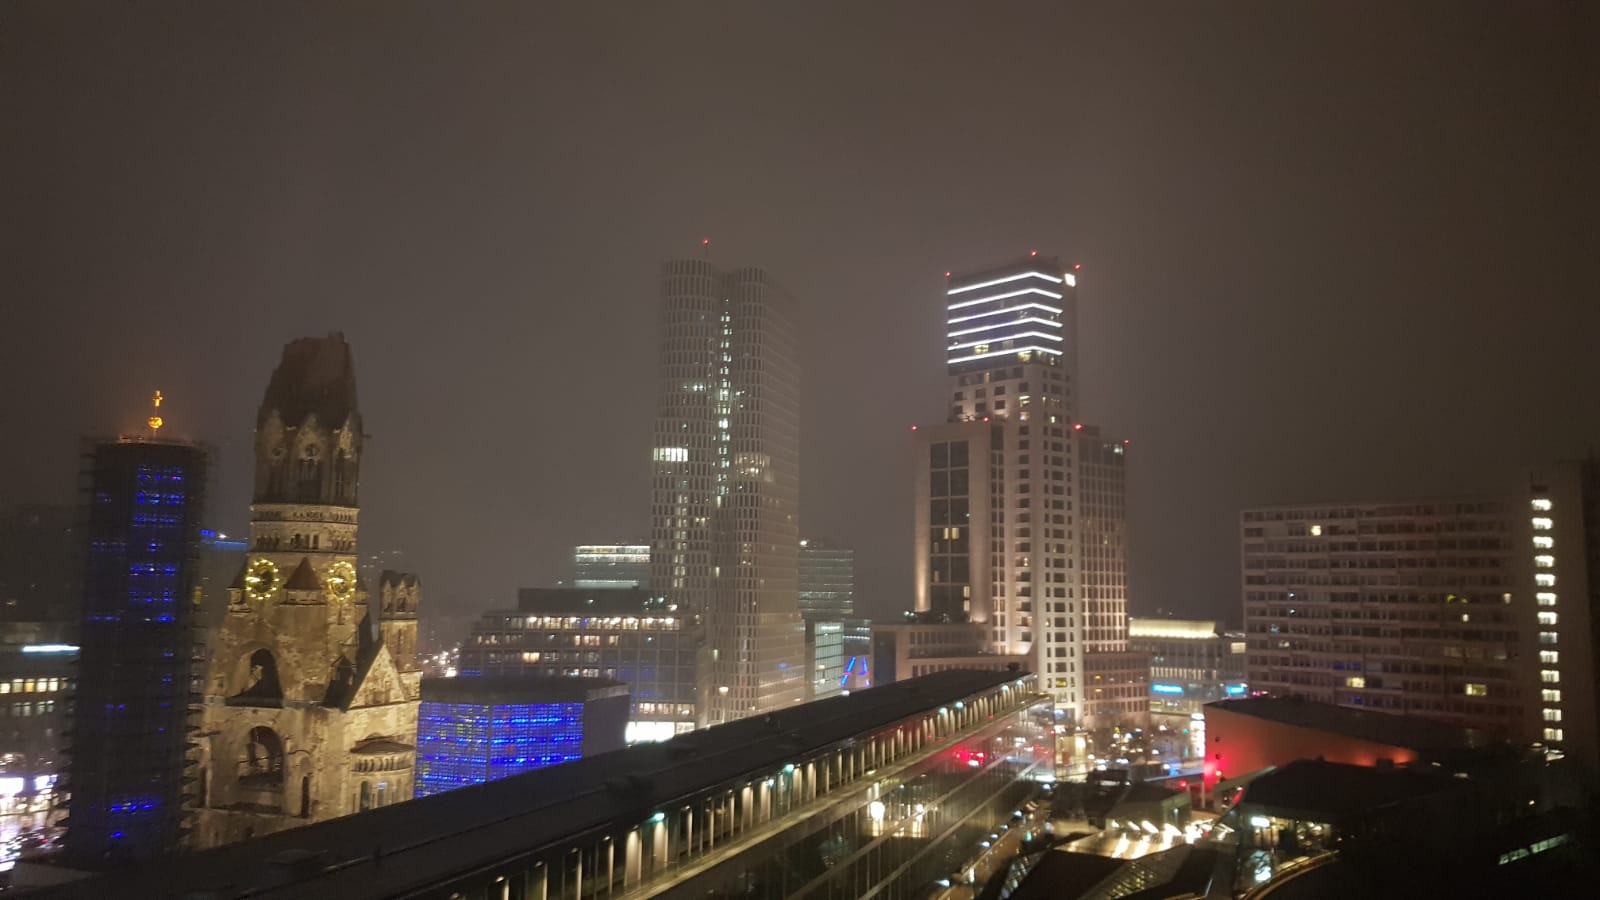 Exkursion Berlin - Berlin bei Nacht mit Blick auf die Gedächtniskirche